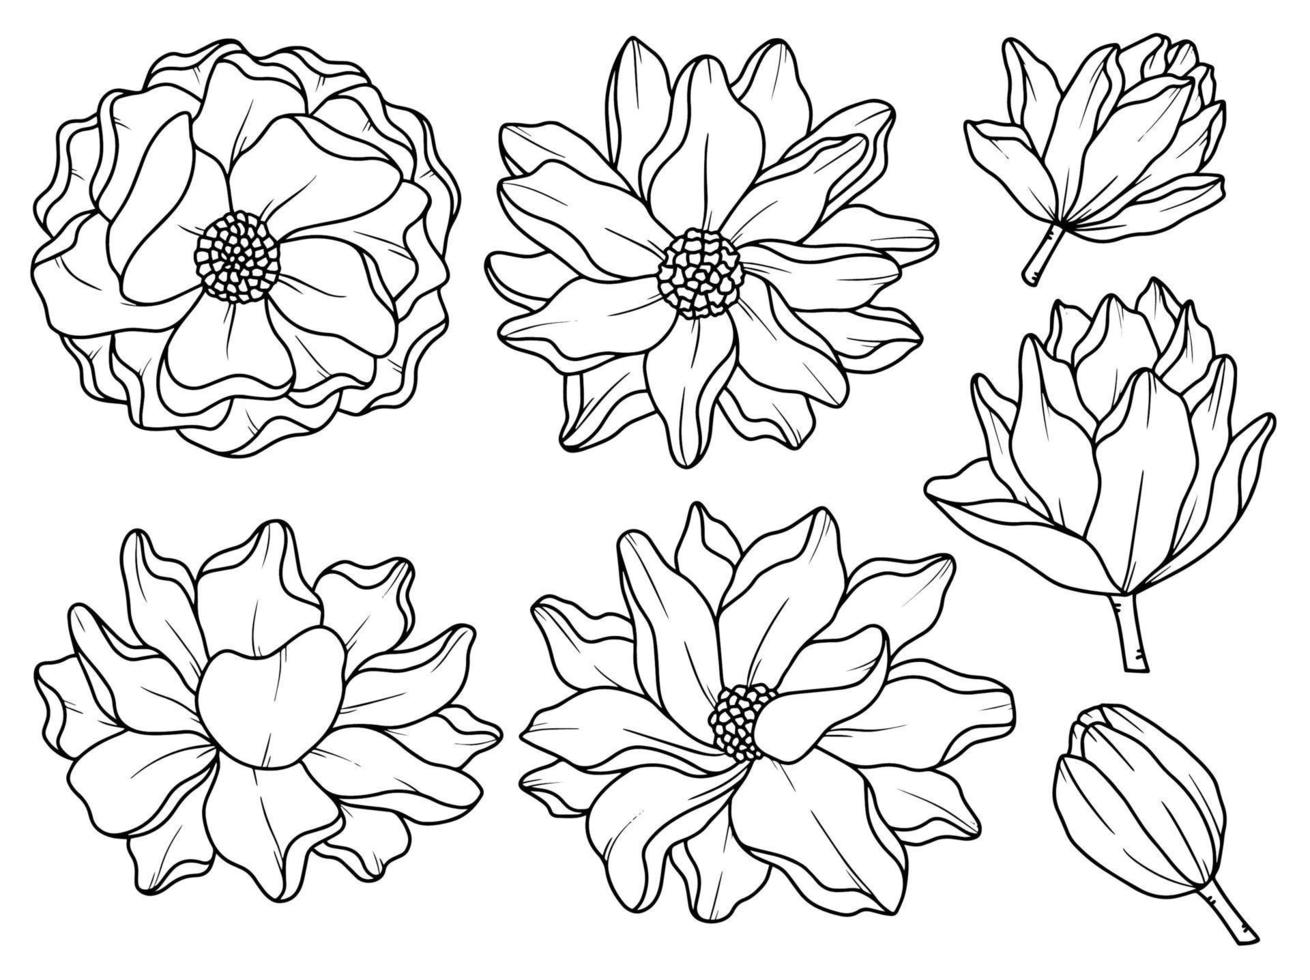 arrangement de dessin au trait de fleurs vecteur